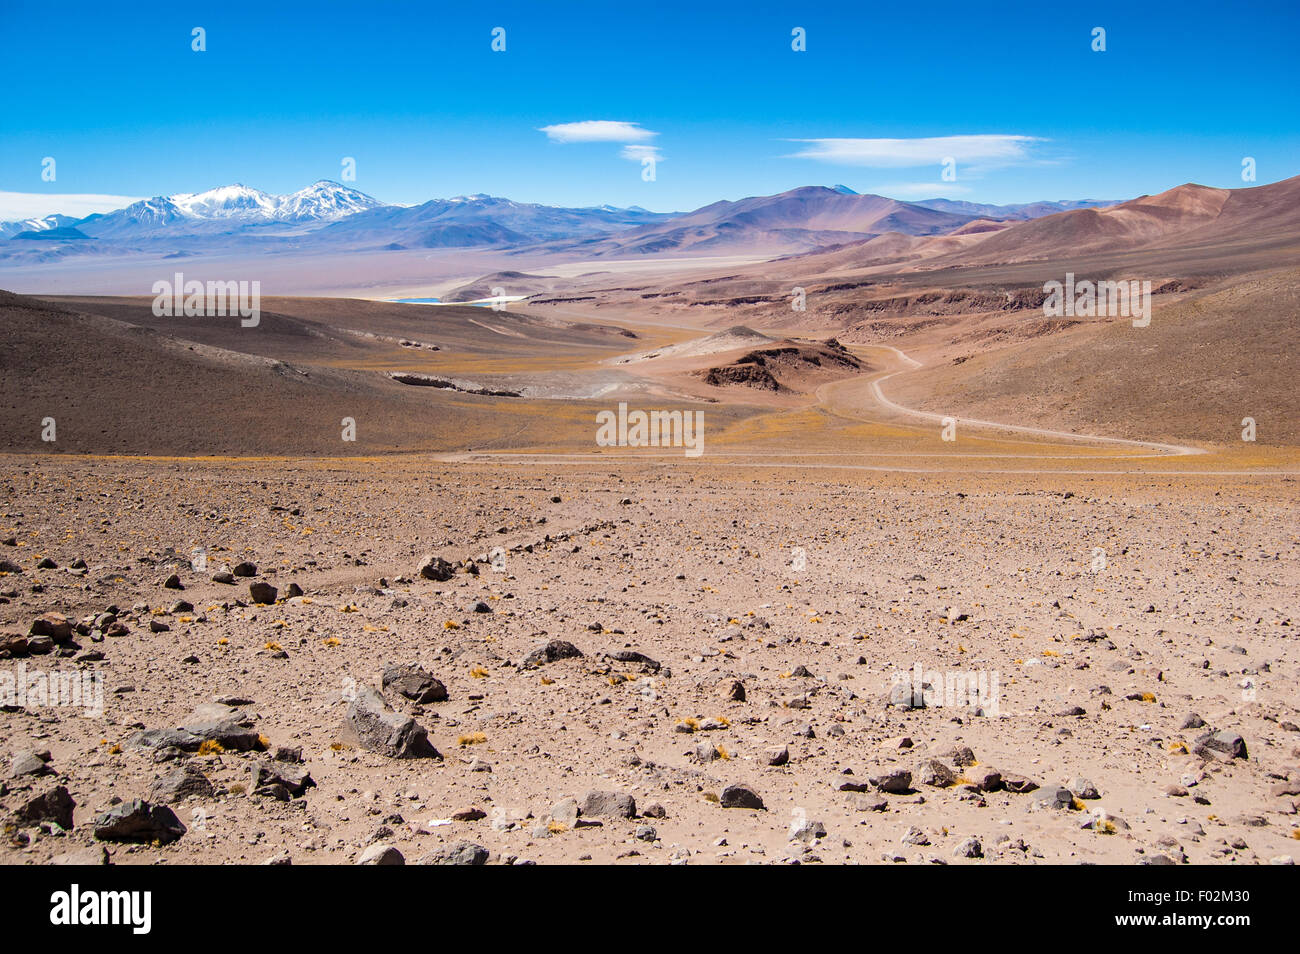 Altiplano near Copiapo, Chile Stock Photo